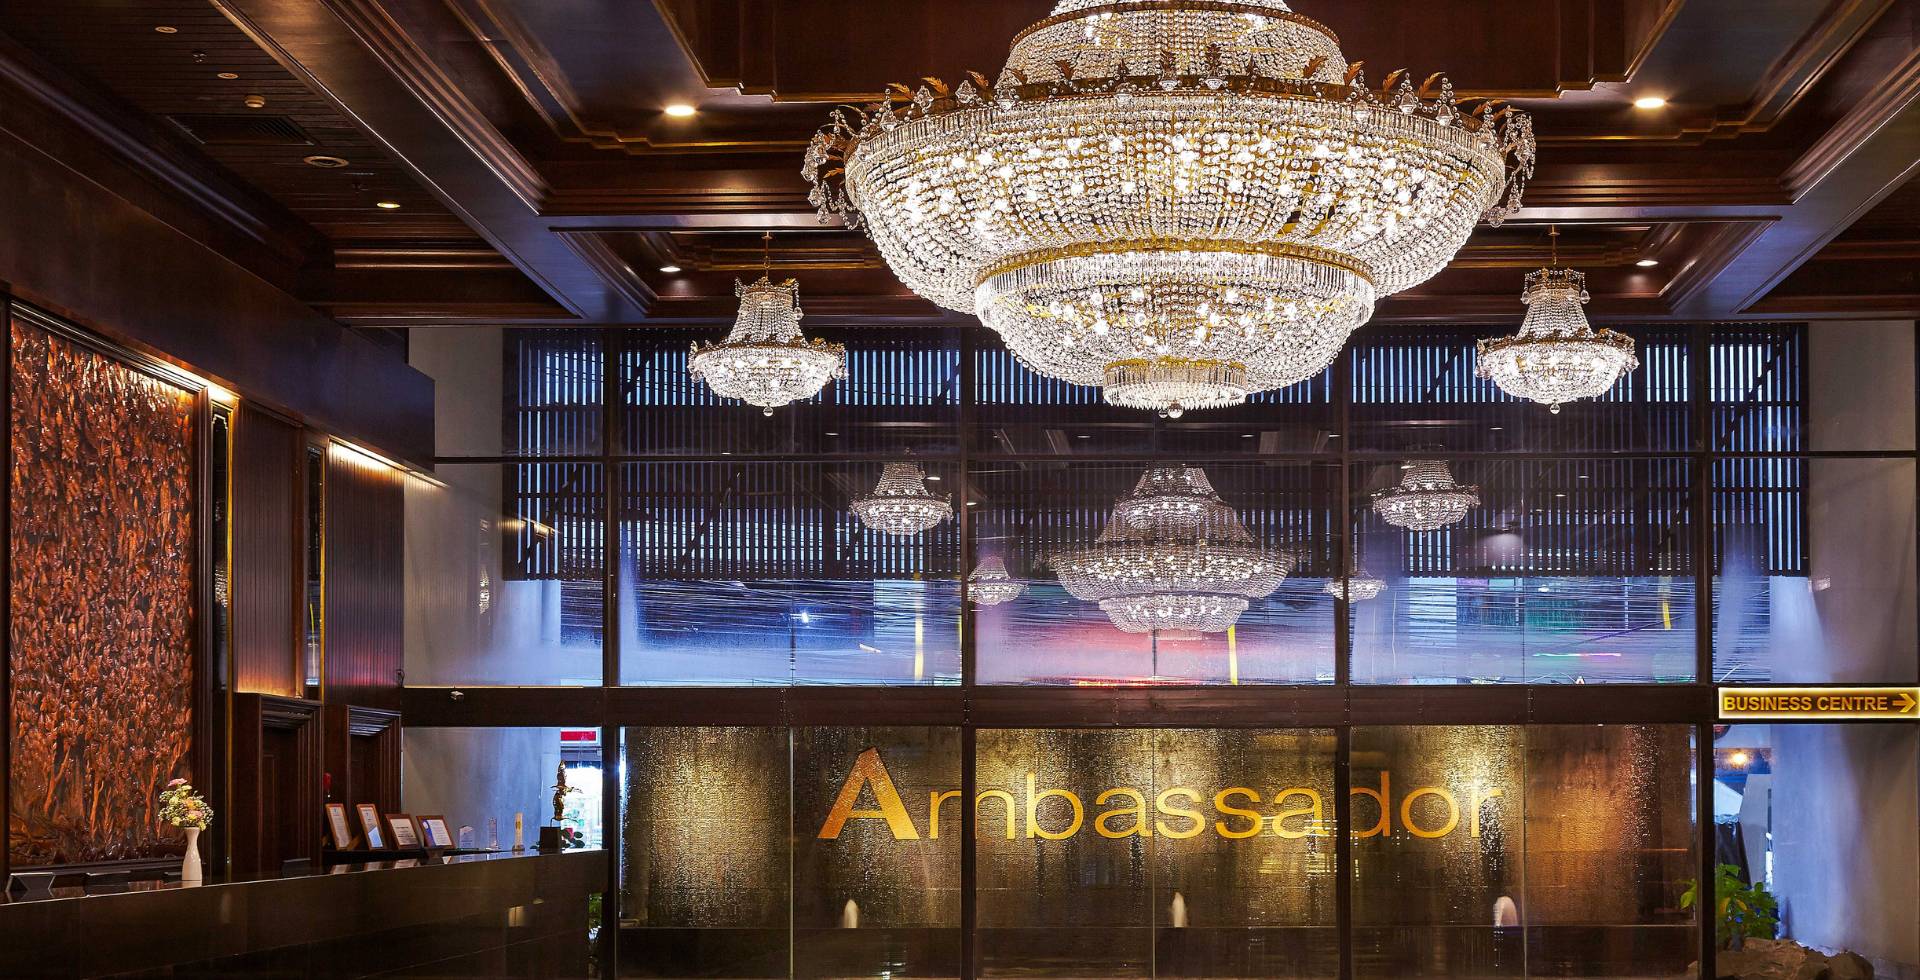  โรงแรมแอมบาสซาเดอร์ กรุงเทพฯ  กรุงเทพมหานคร